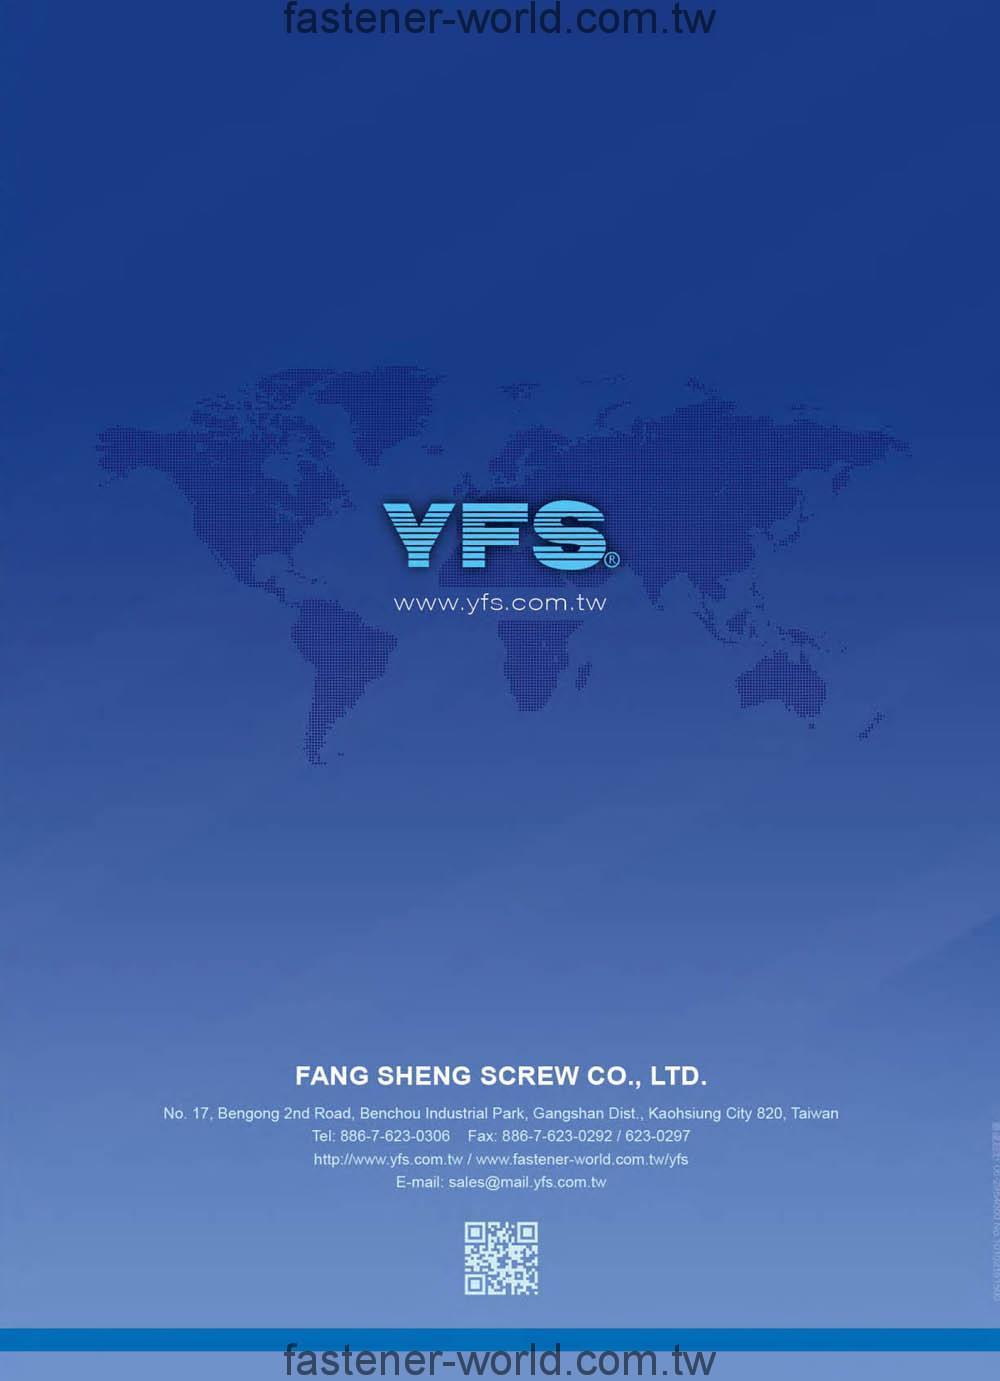 FANG SHENG SCREW CO., LTD. (YFS)_Online Catalogues